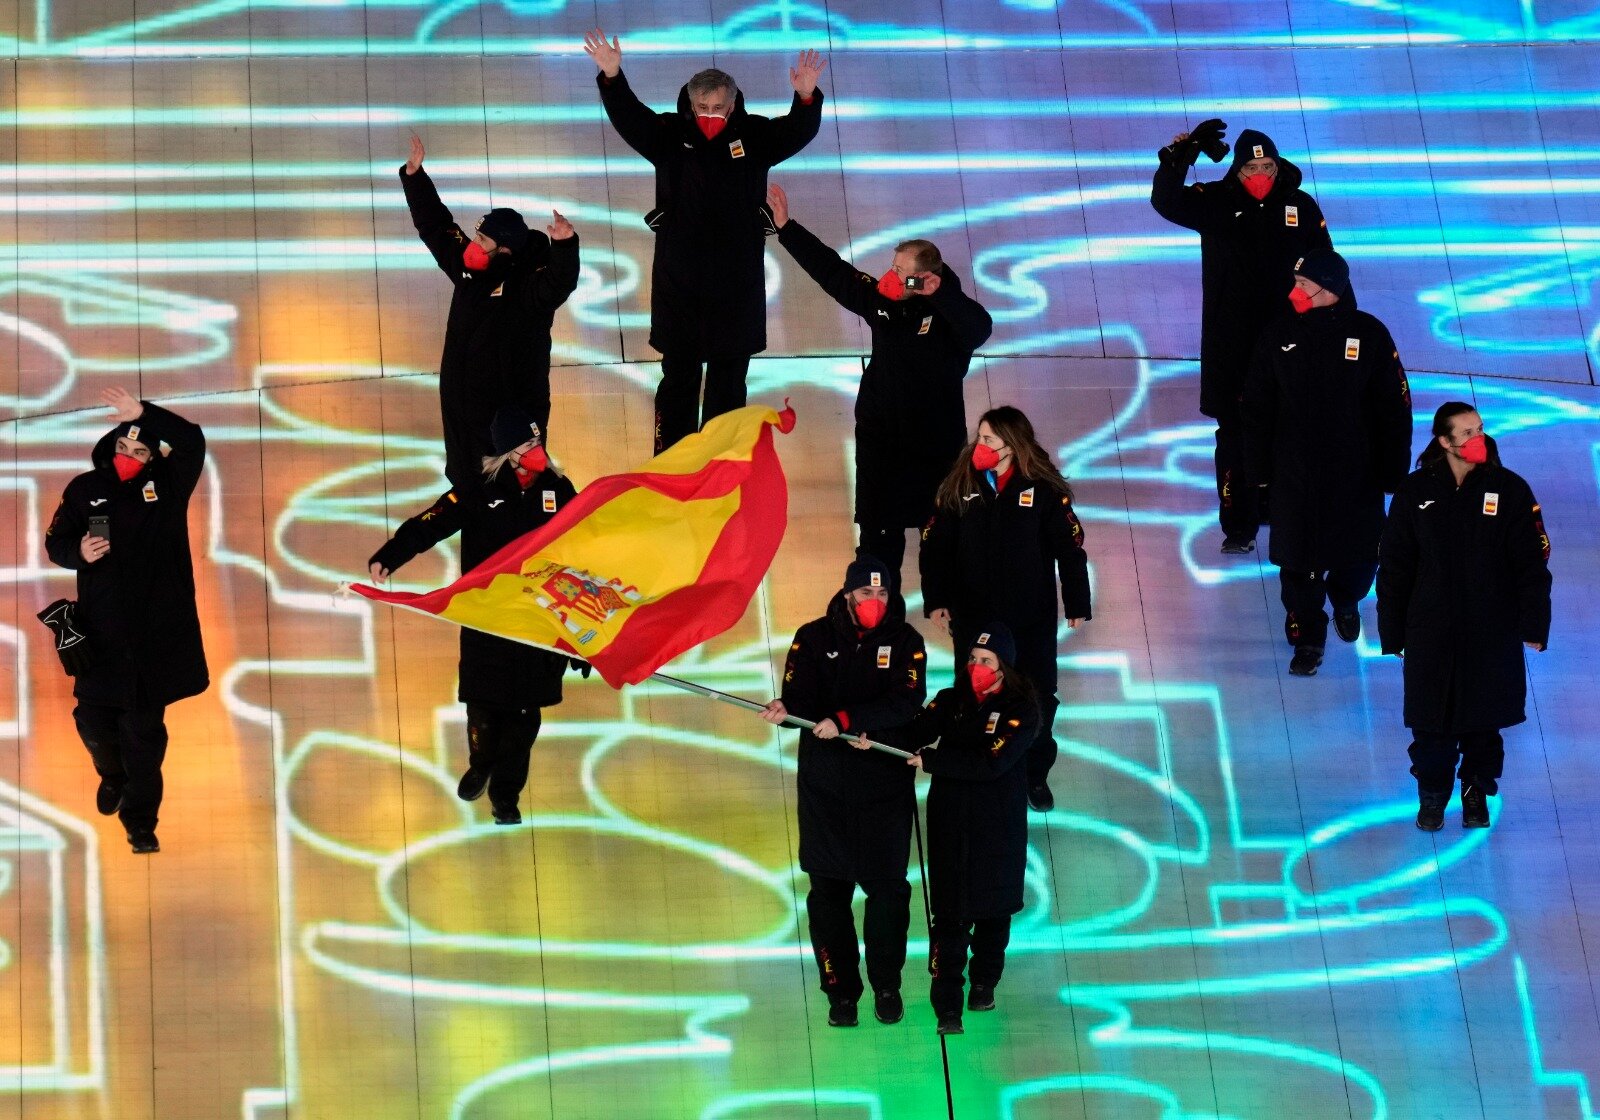 Delegación española en la ceremonia inaugural de Pekín 2022.Fuente: COE